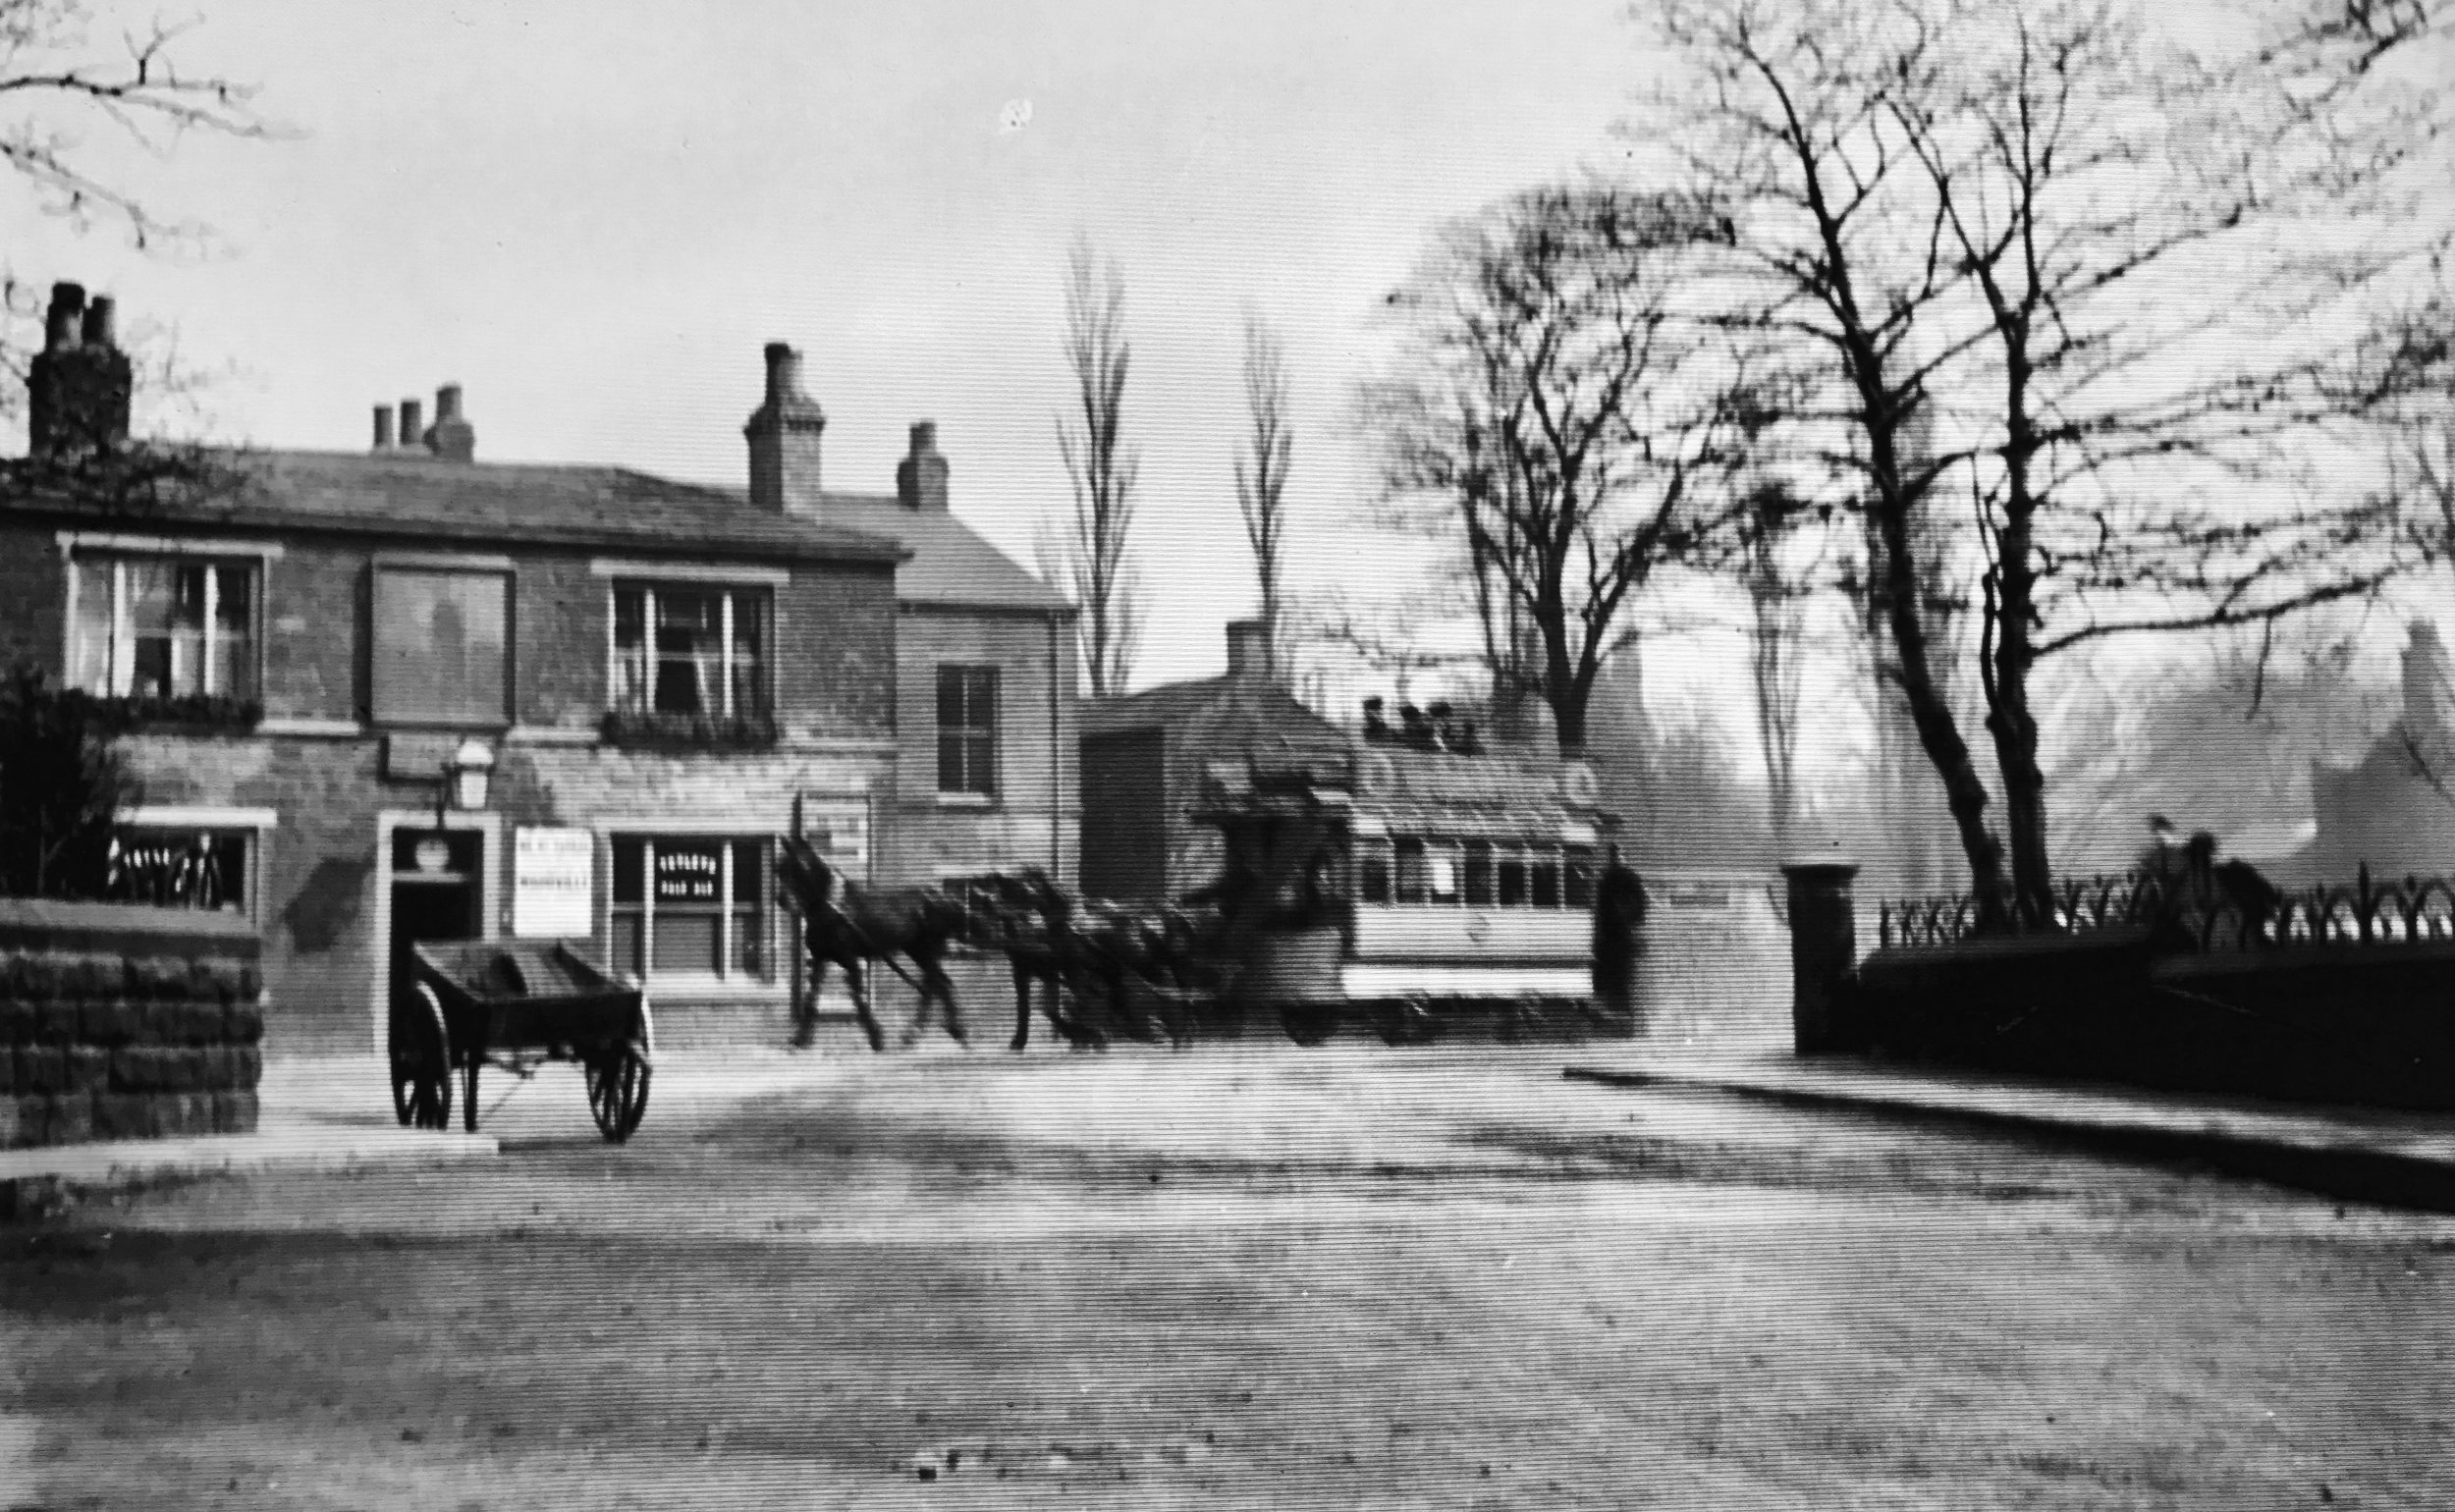 Original Oak Inn and Horse Tram, circa 1890